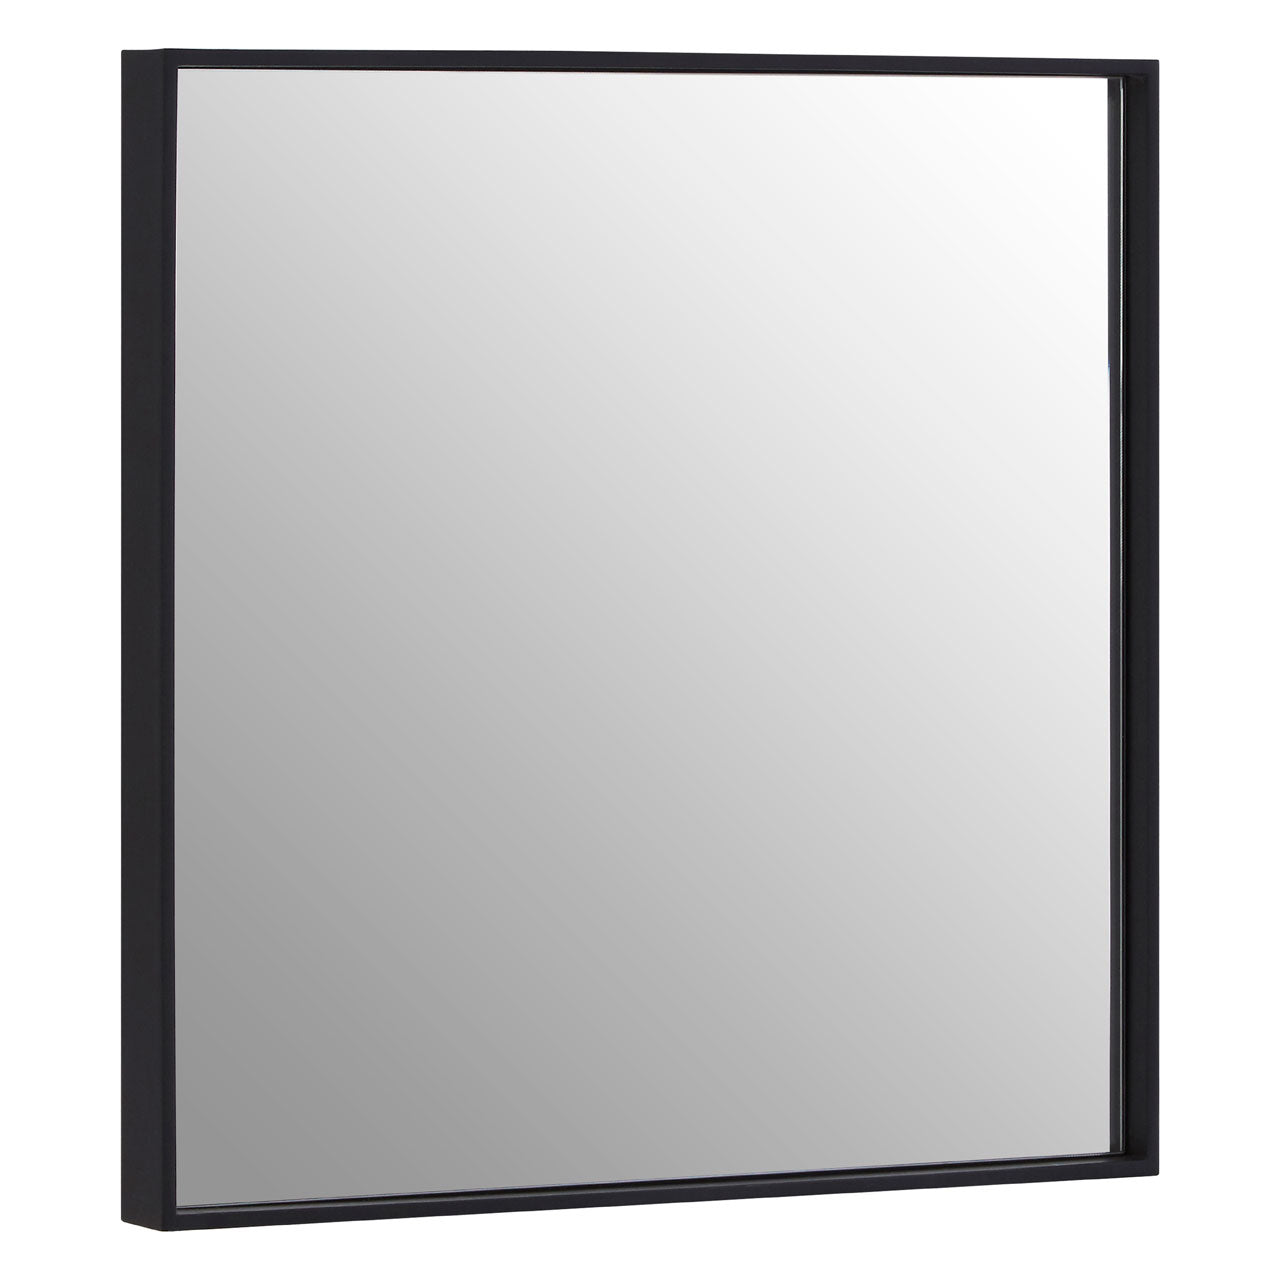 Matt Black Medium Square Wall Mirror